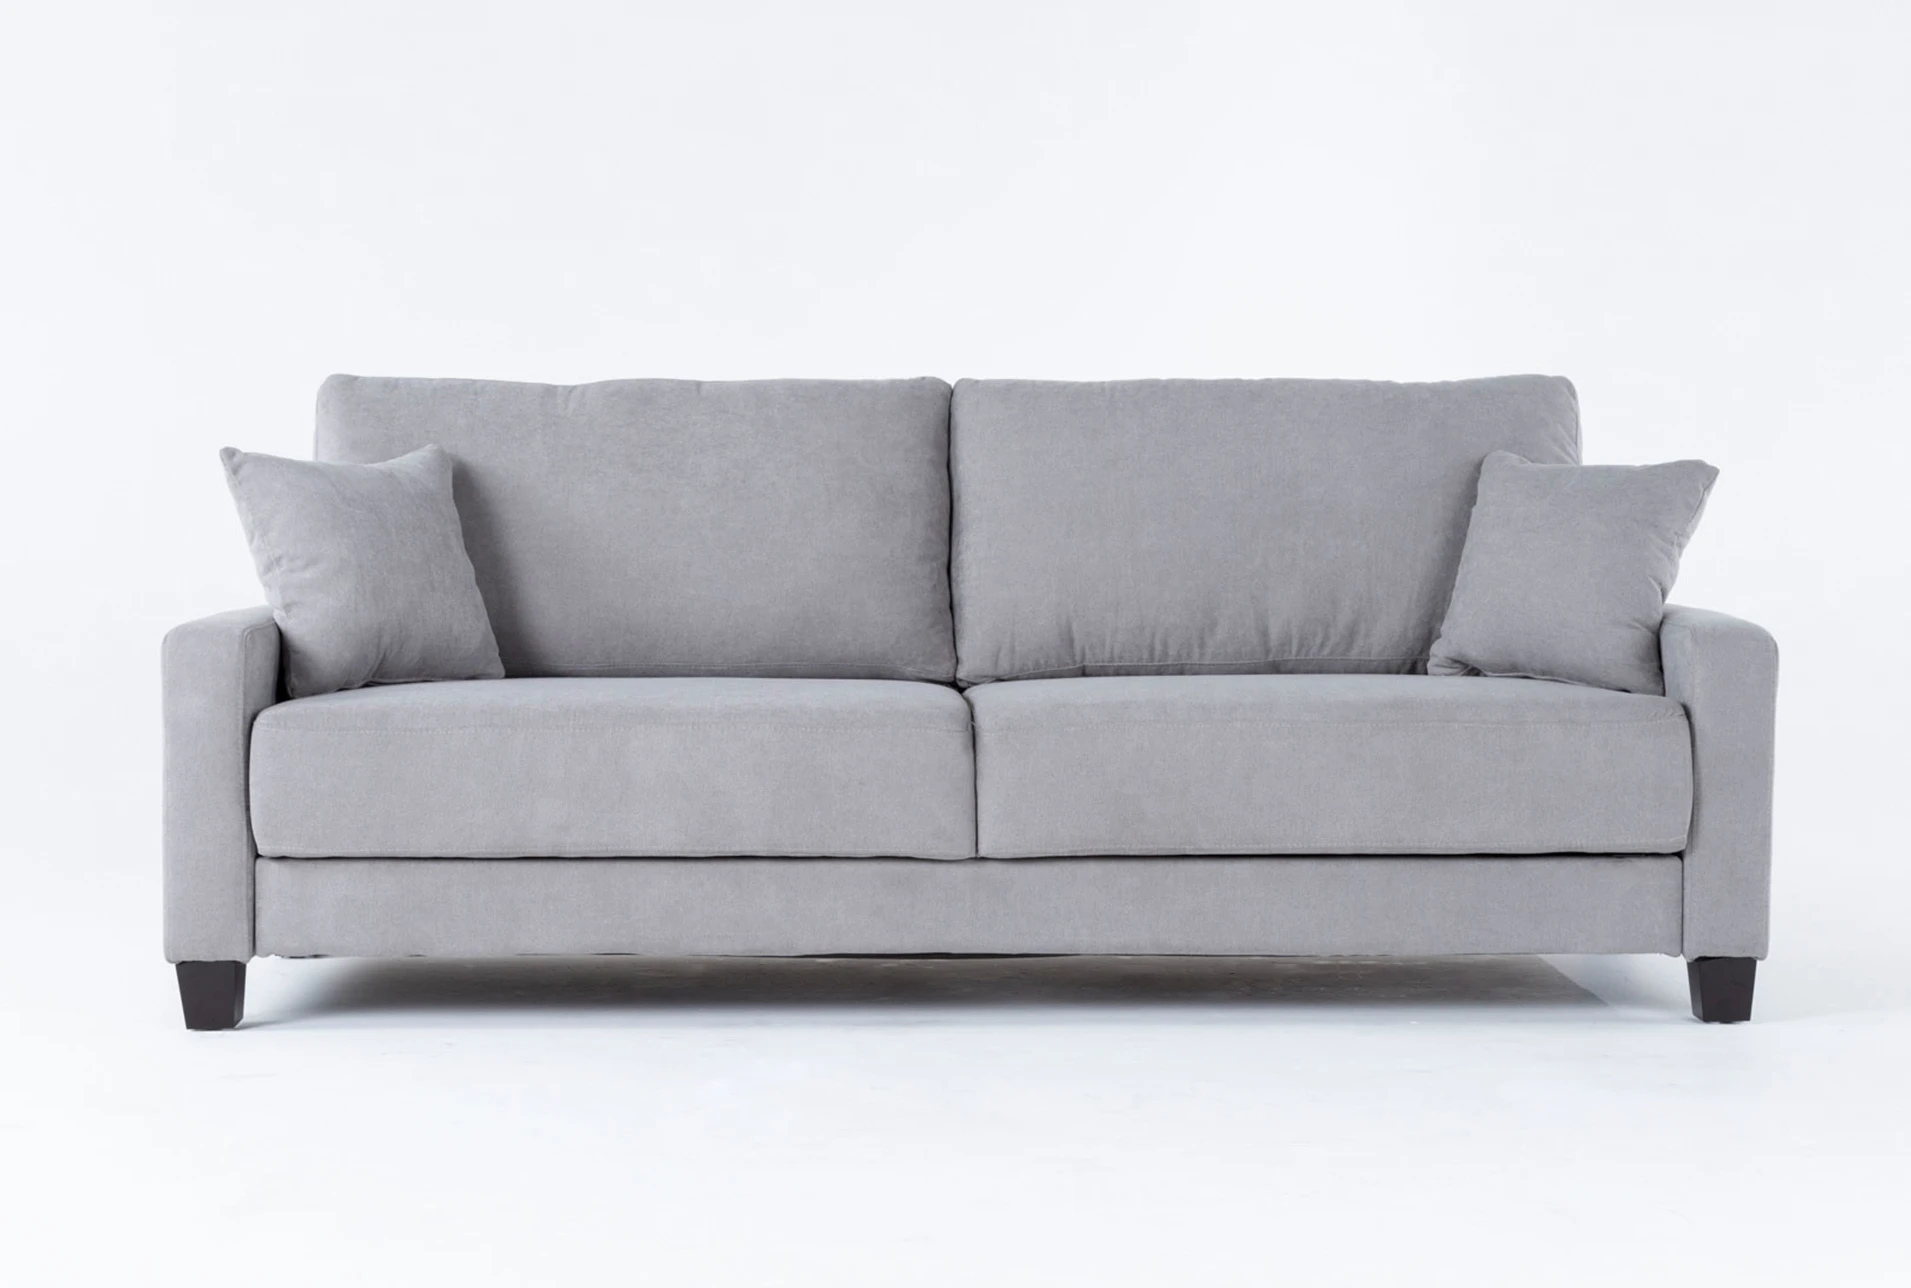 Pascal Grey 91 Queen Convertible Sofa, Grey Sofa Bed Queen